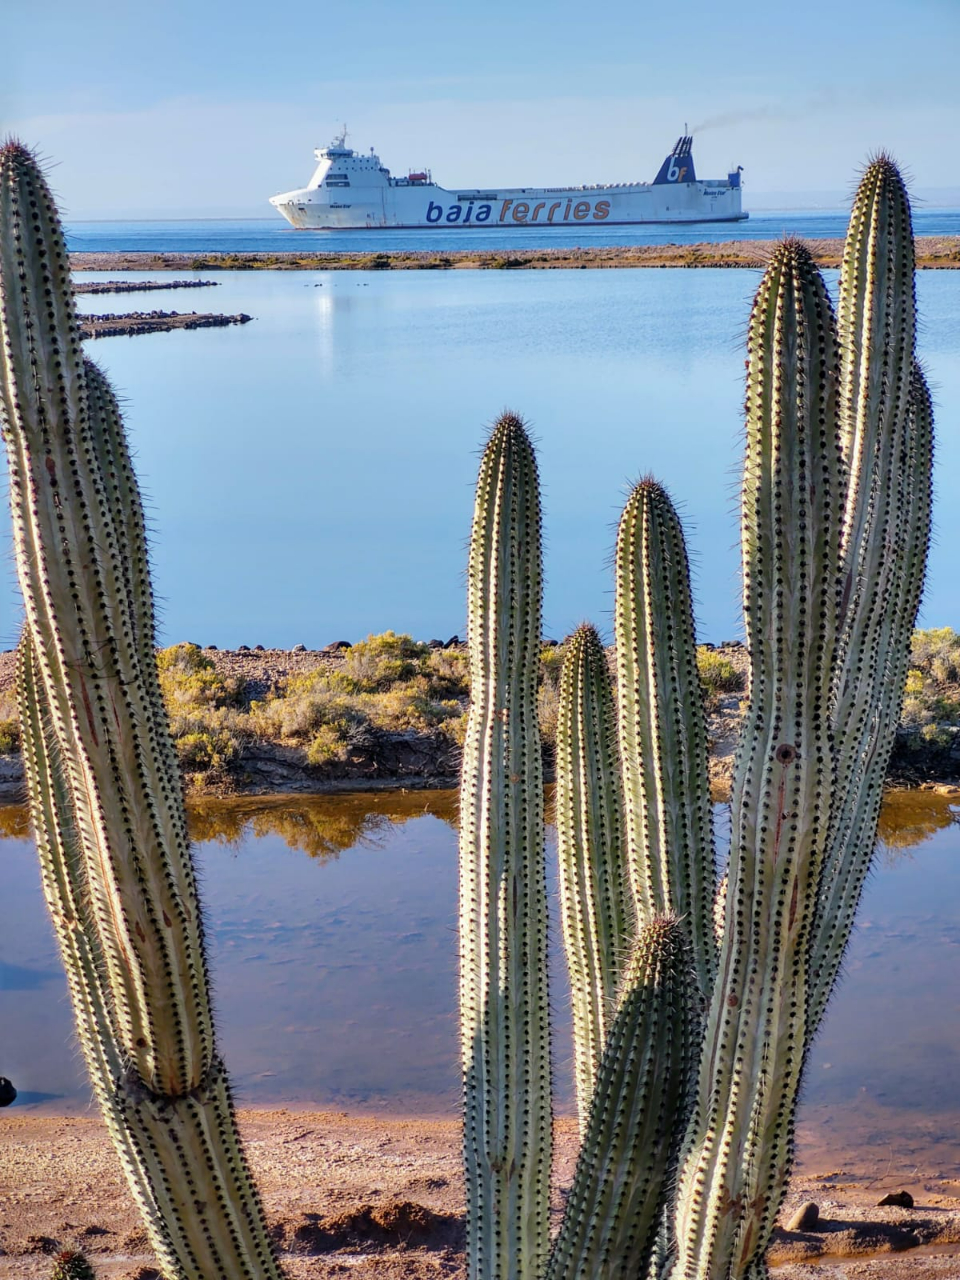 La empresa Baja Ferries fundada en 2003 opera dos rutas de ferry que conectan la parte sur de la península de Baja California con el resto de México a través del Golfo de California: Baja Star y México Star. Los viajeros pueden moverse entre Baja Sur y Sinaloa evitando el largo camino hacia el norte, ahorrando en costos de combustible y tiempo de conducción en caso de que los recorridos se deseen emprender en carro o camión.